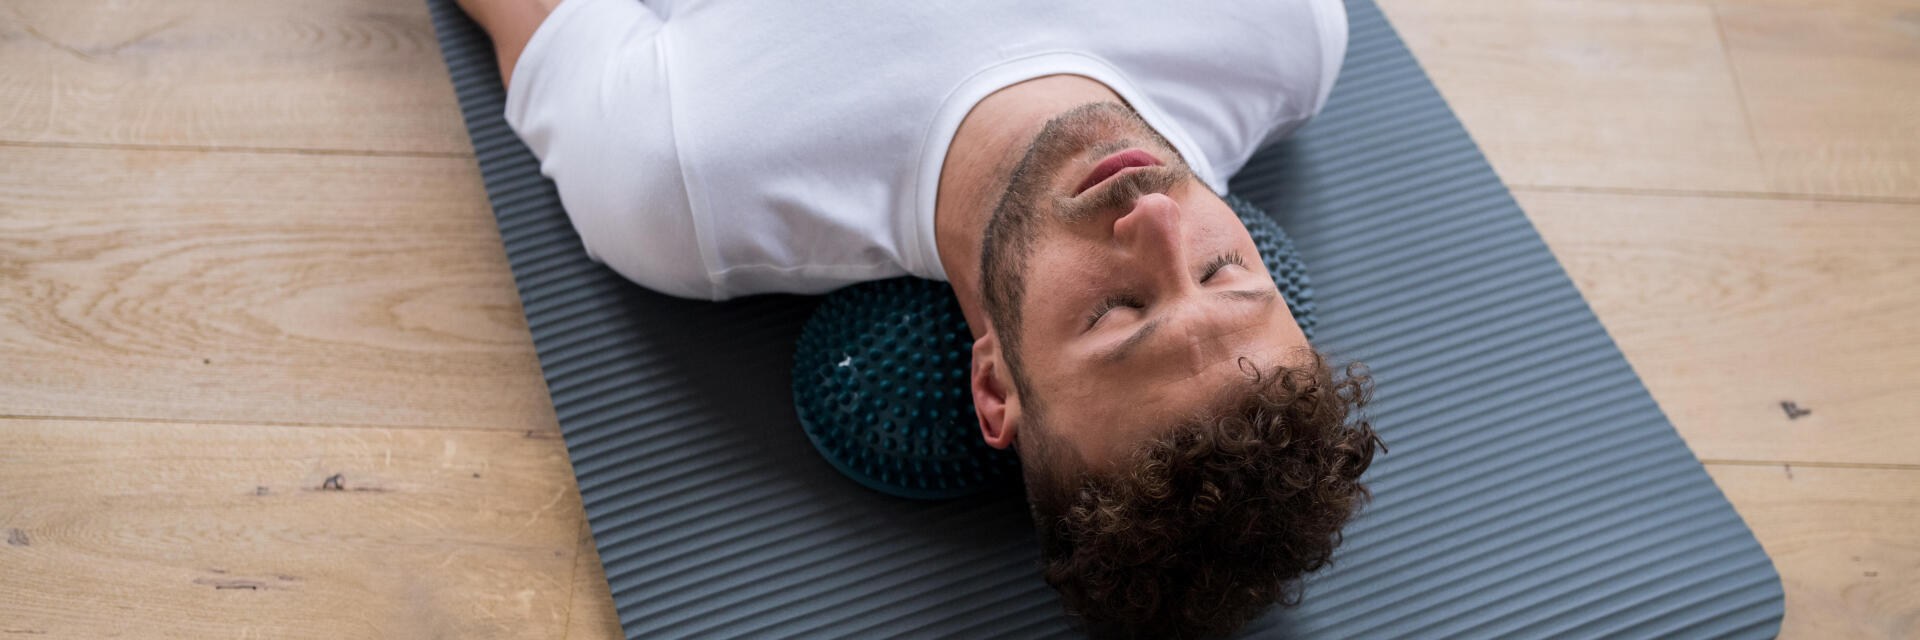 homme sur un tapis de yoga, les yeux fermés